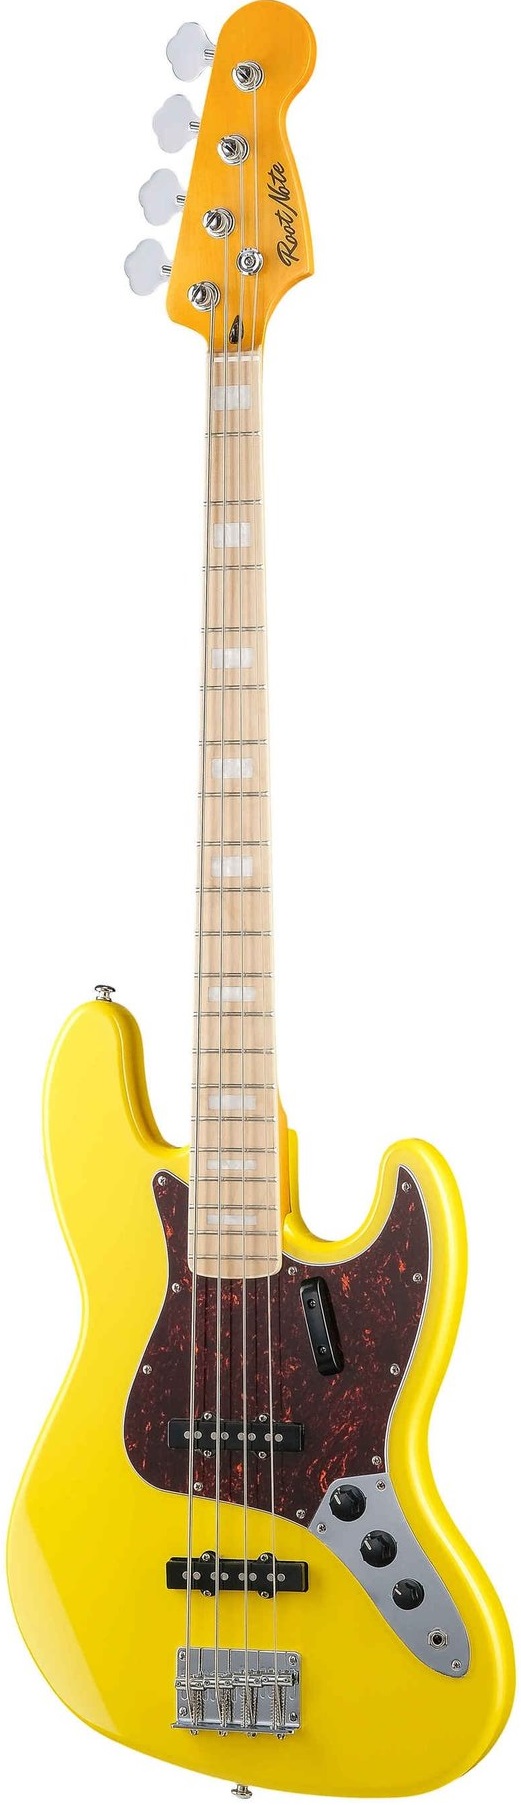 Бас-гитары Root Note JB001-VWH p 011 12 дырочный звукосниматель для акустической гитары магнитный преобразователь с регулятором громкости тона аудиокабель